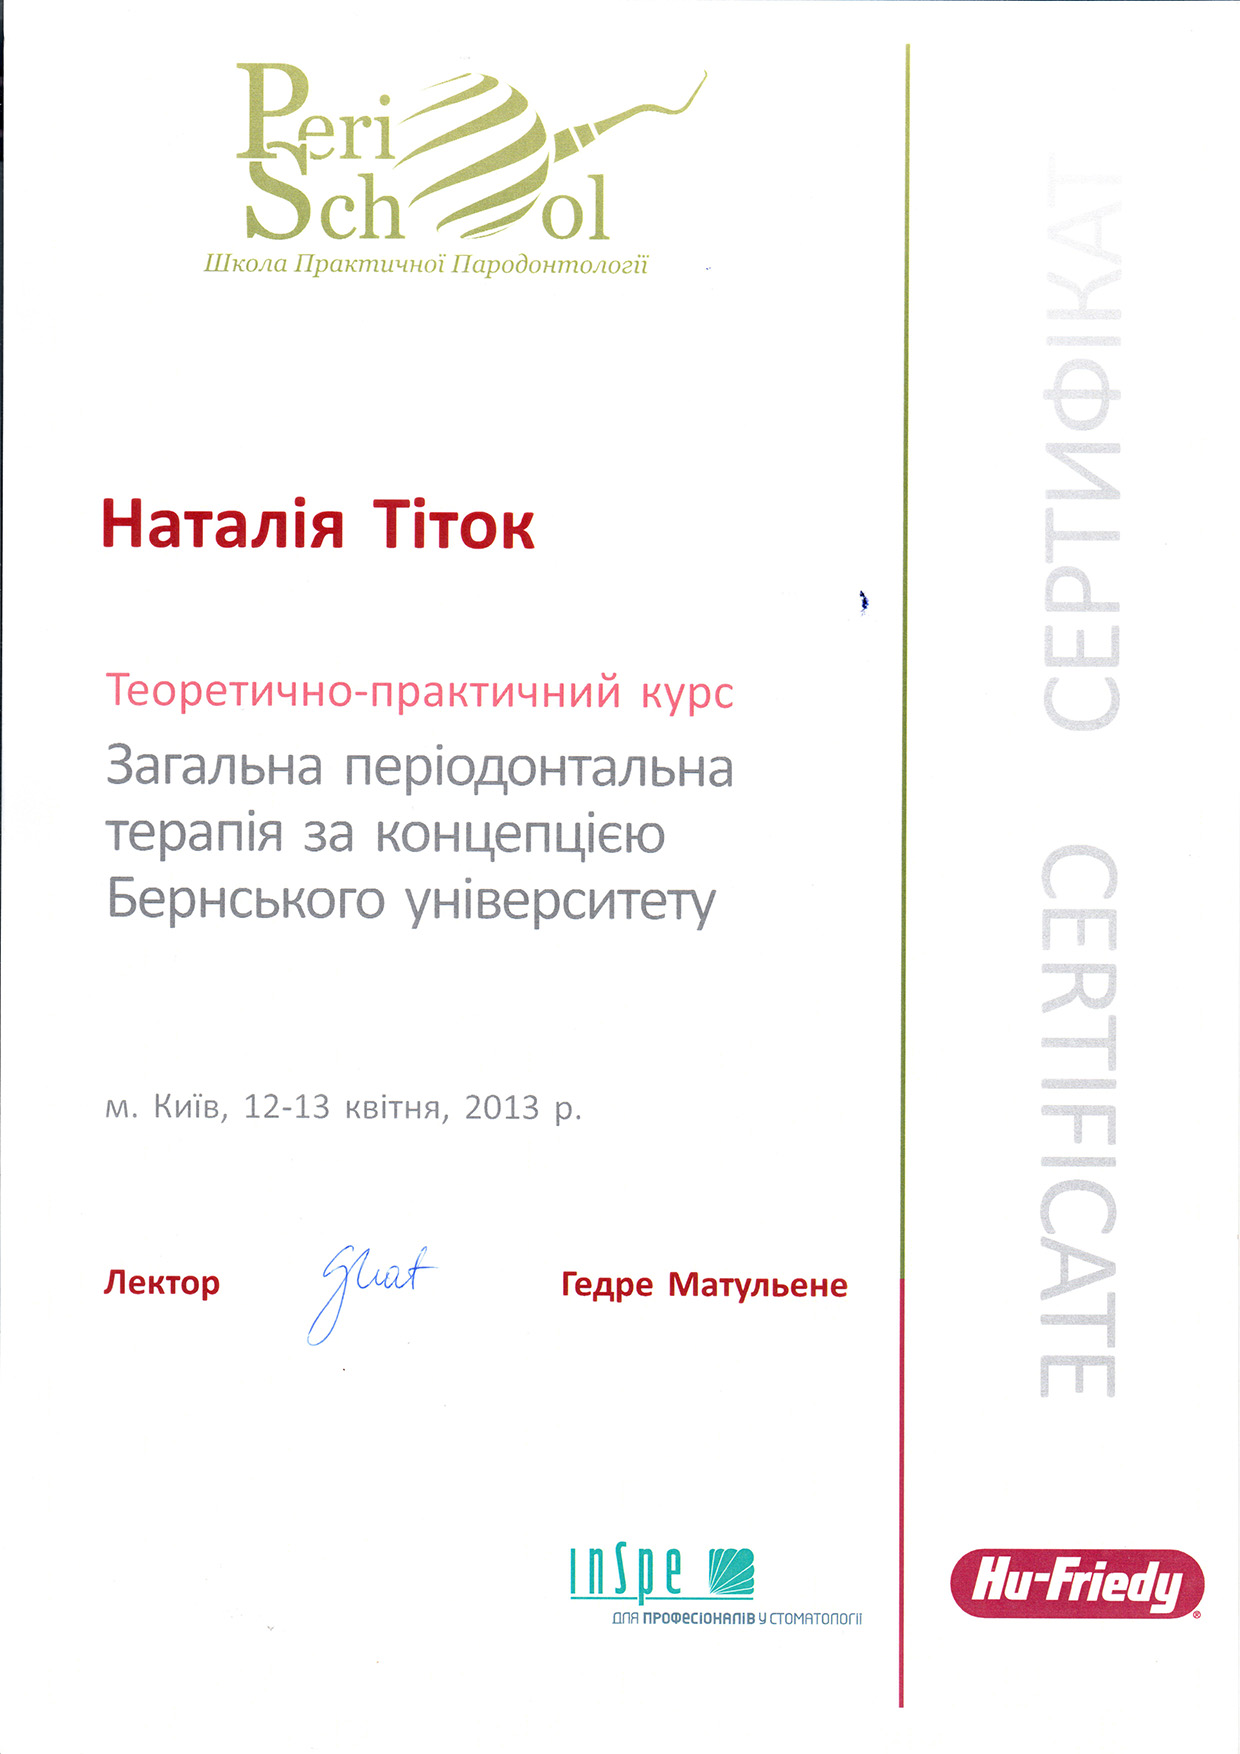 Titok04-2013